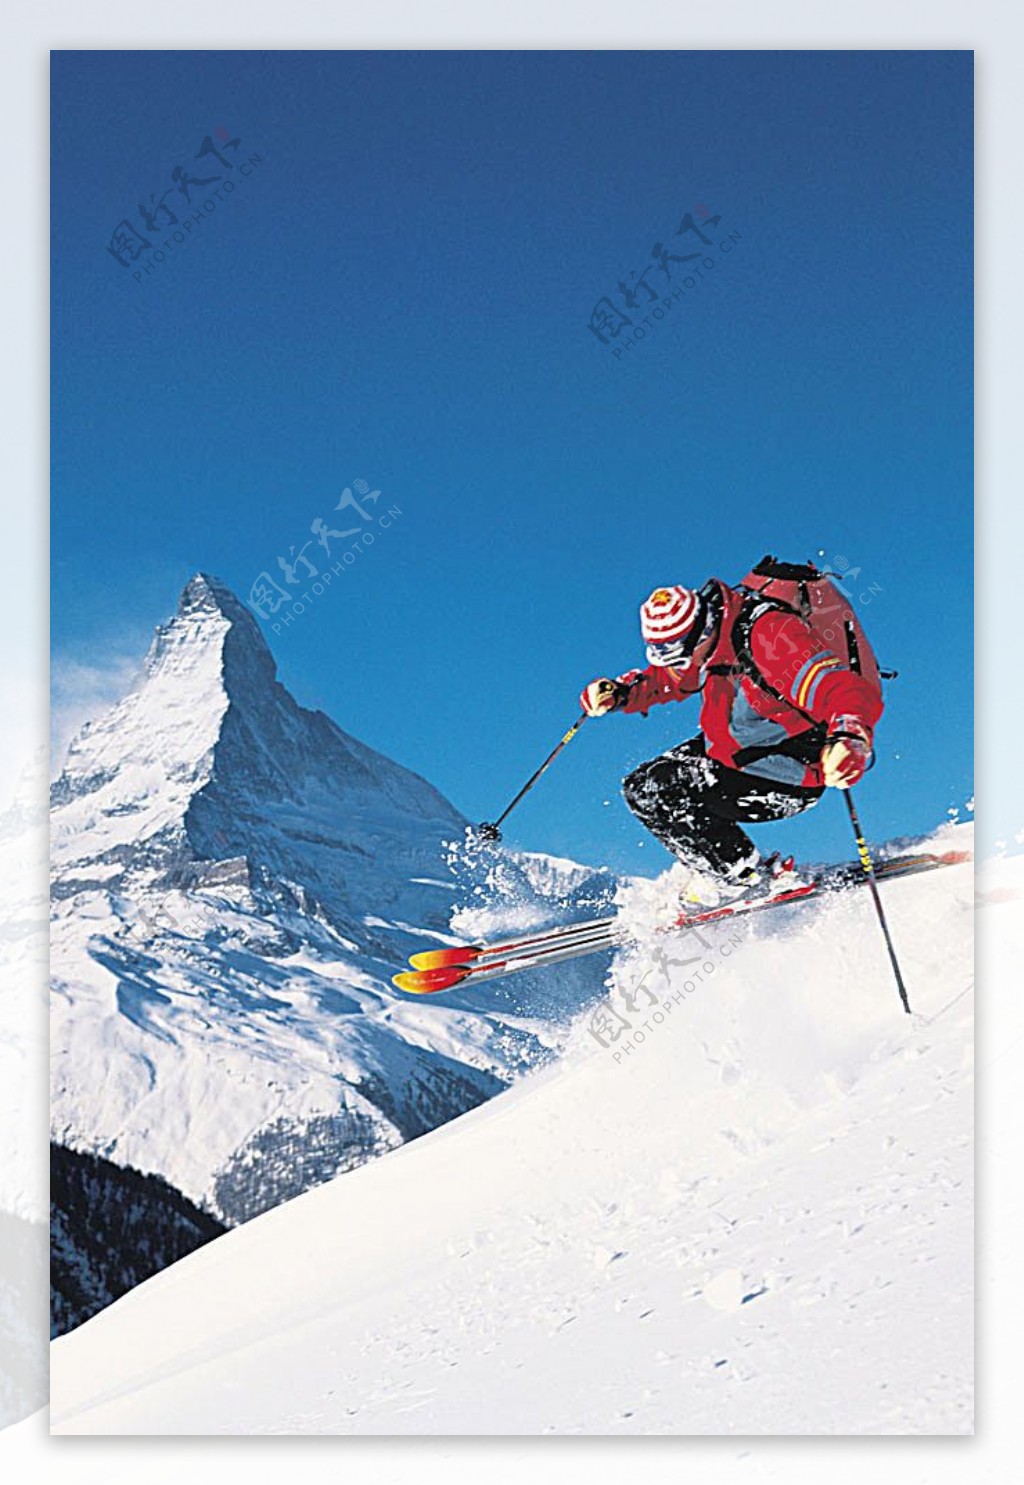 急速下滑的滑雪运动员高清图片